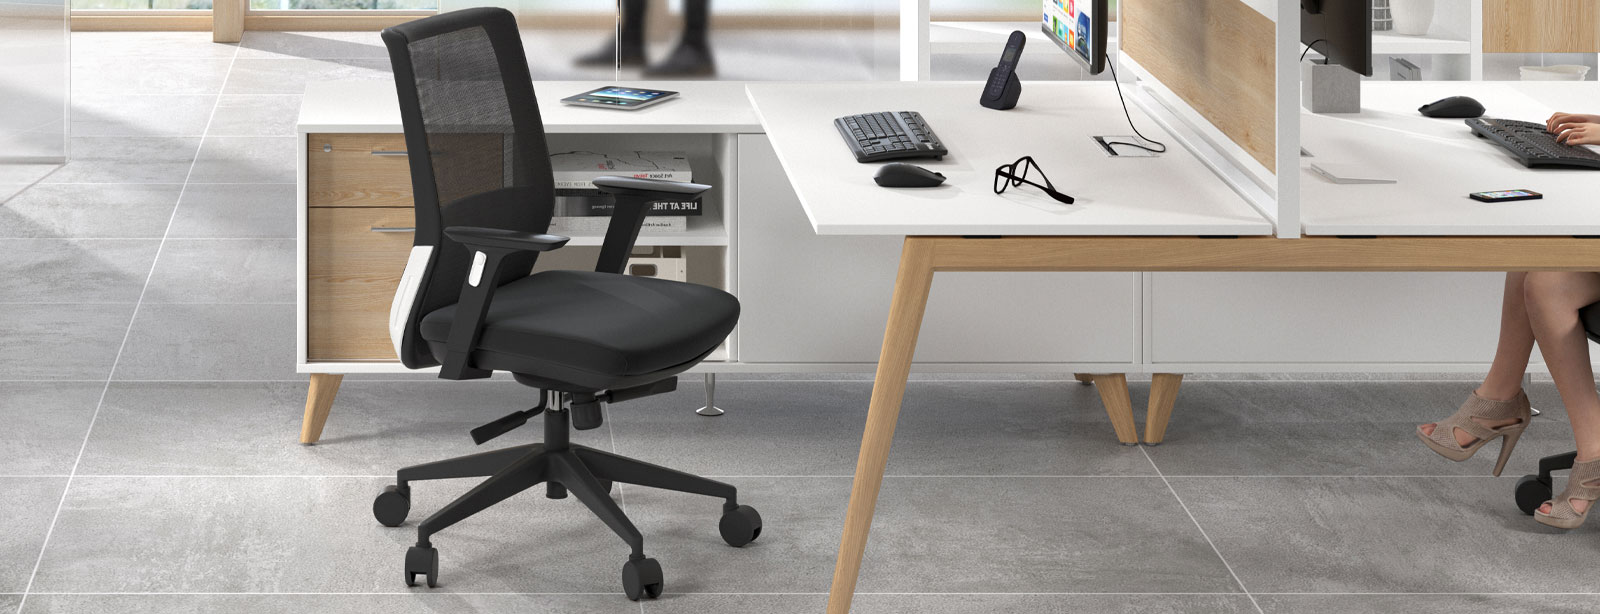 Cómo elegir la mejor silla de oficina